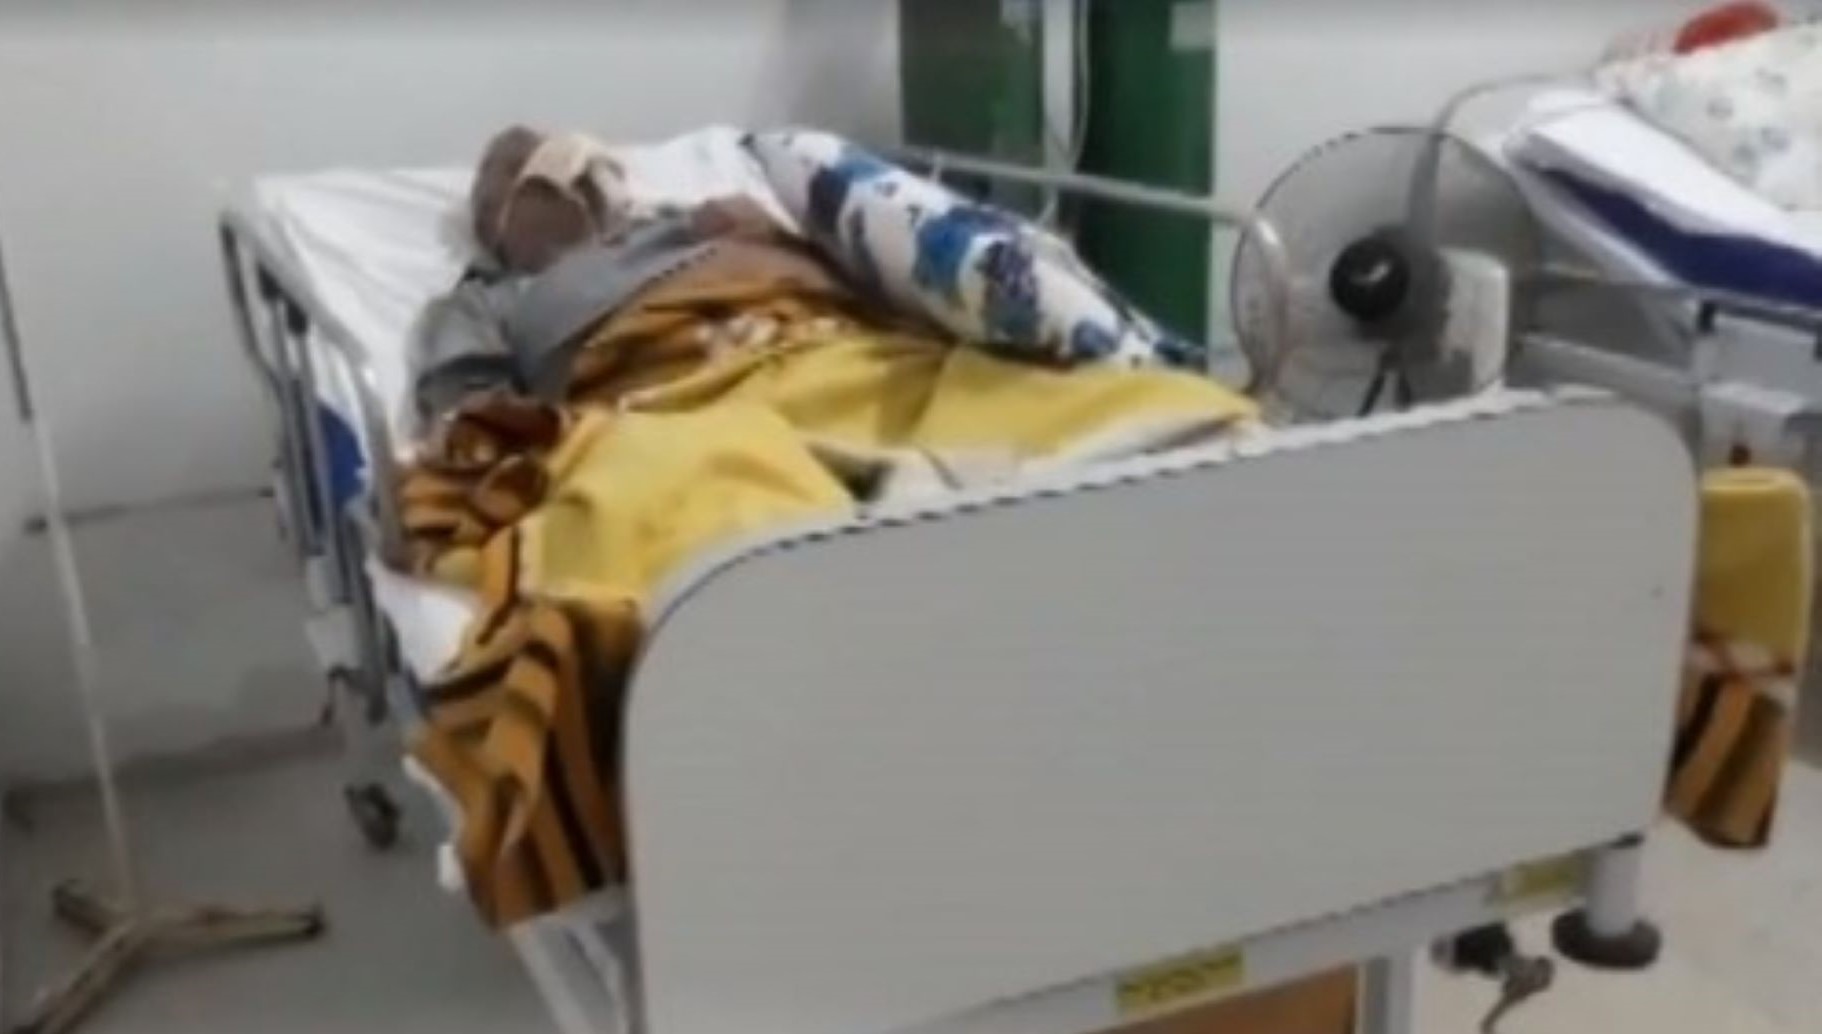 Cuiabá | Família de paciente que morreu por Covid-19 diz que maqueiros desligaram aparelho ao esbarrarem em tomada